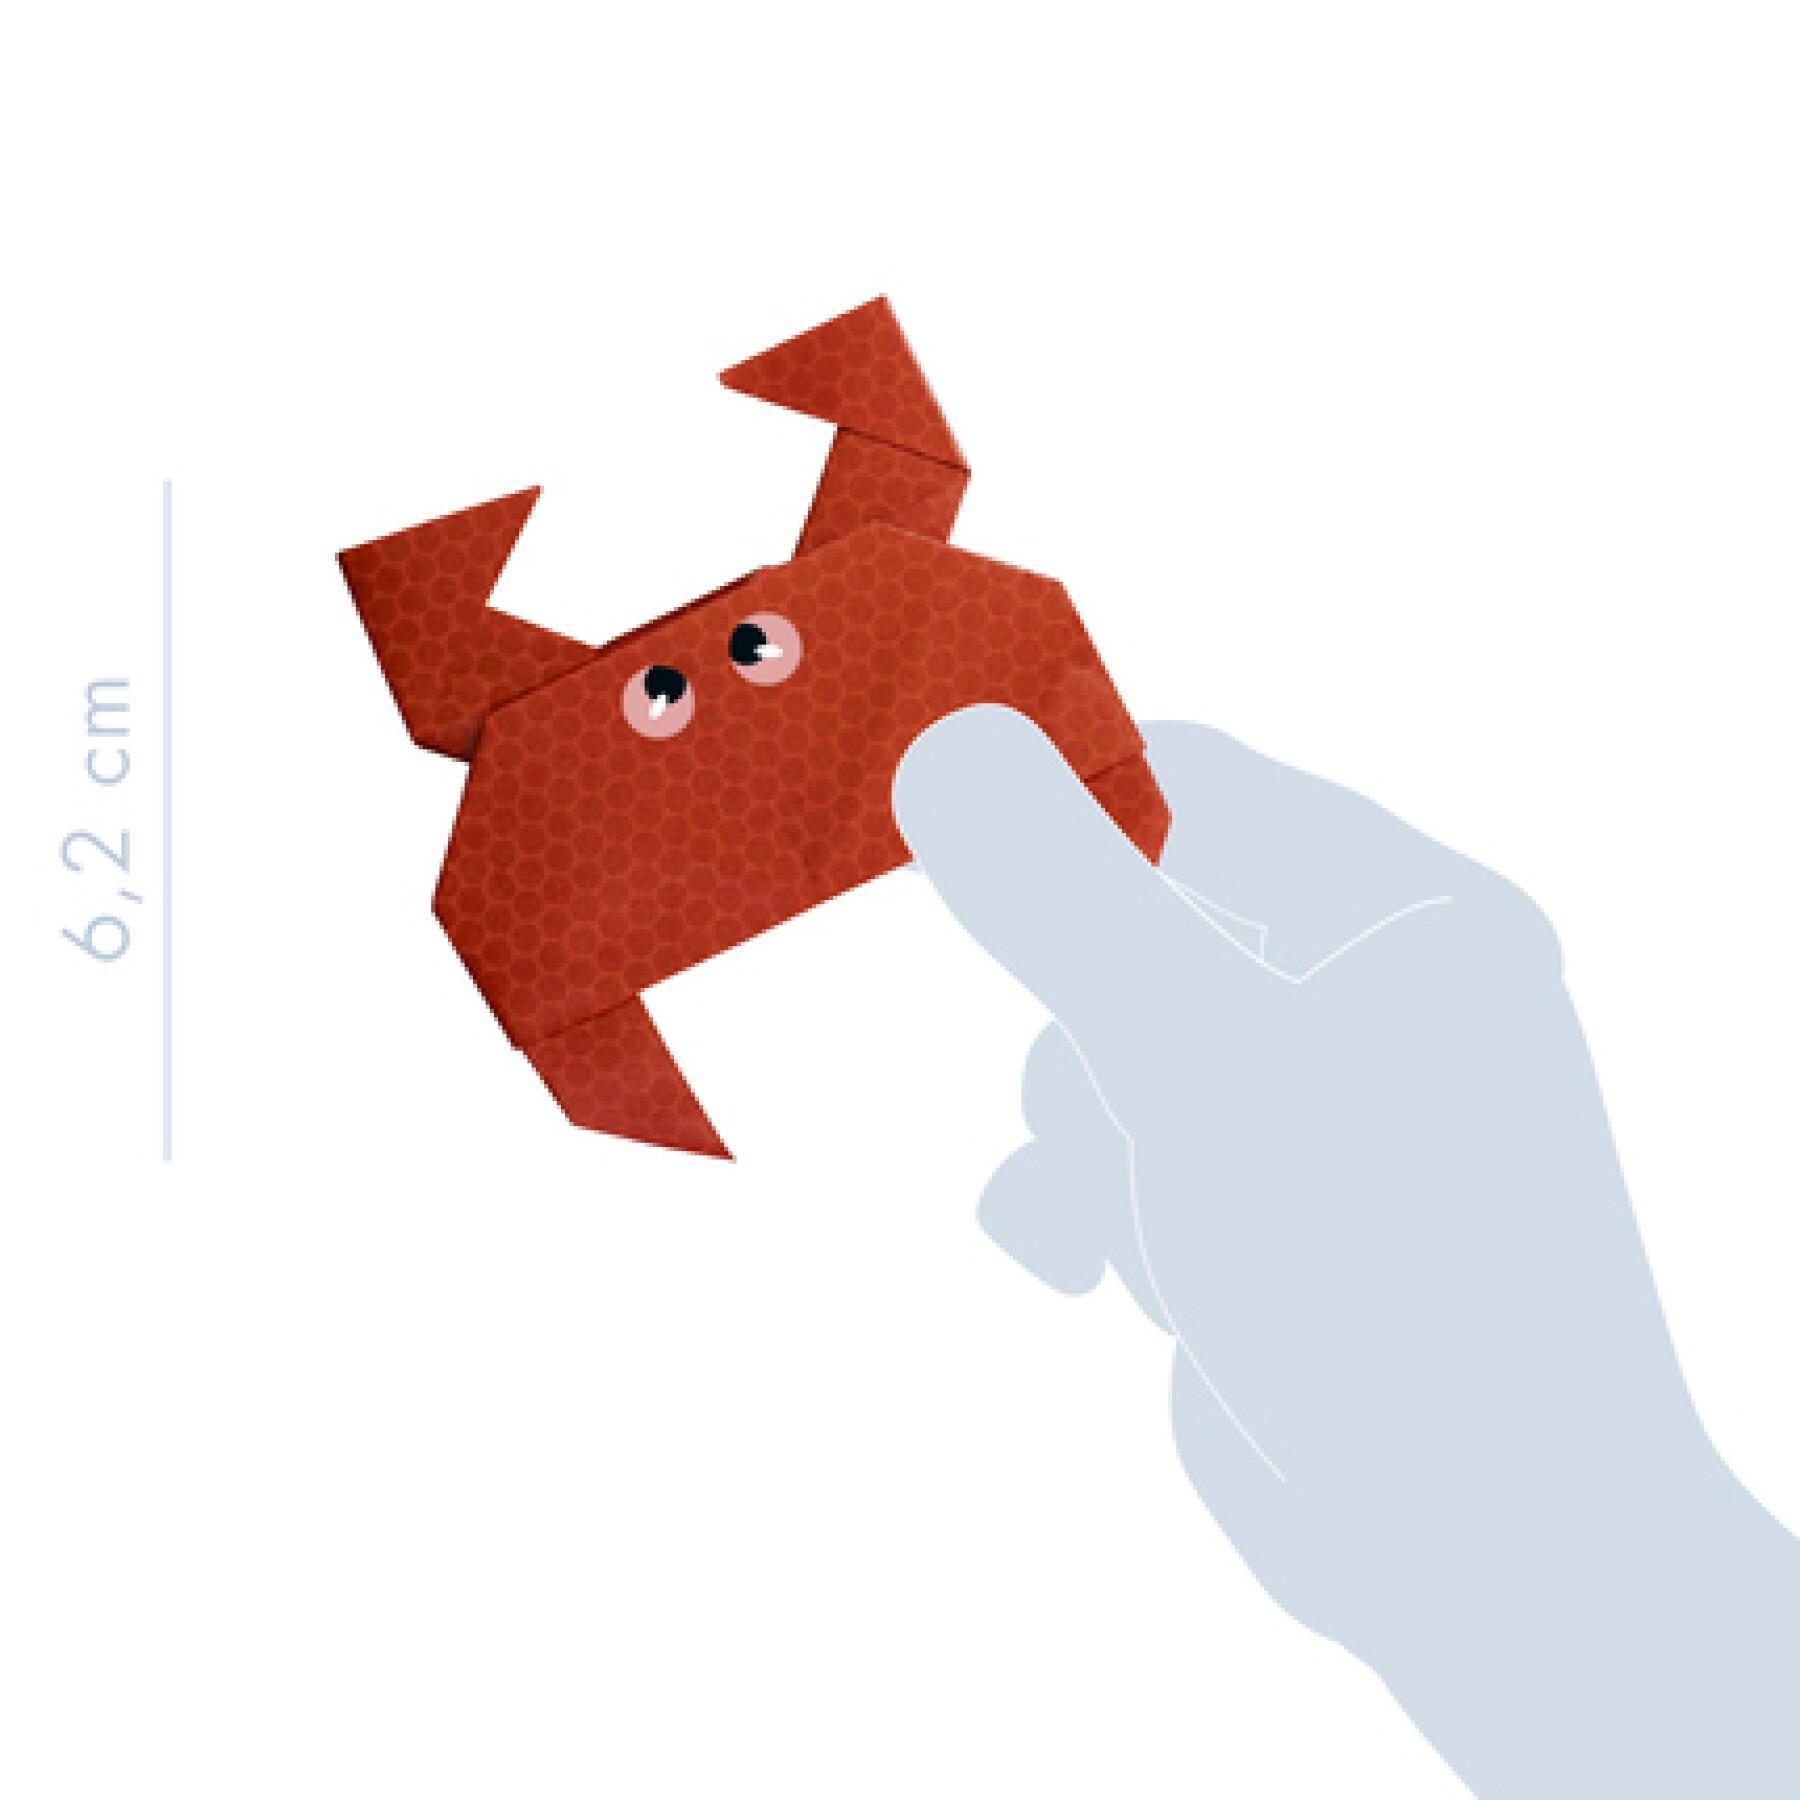 Caixa criativa - origami 2 Avenue Mandarine